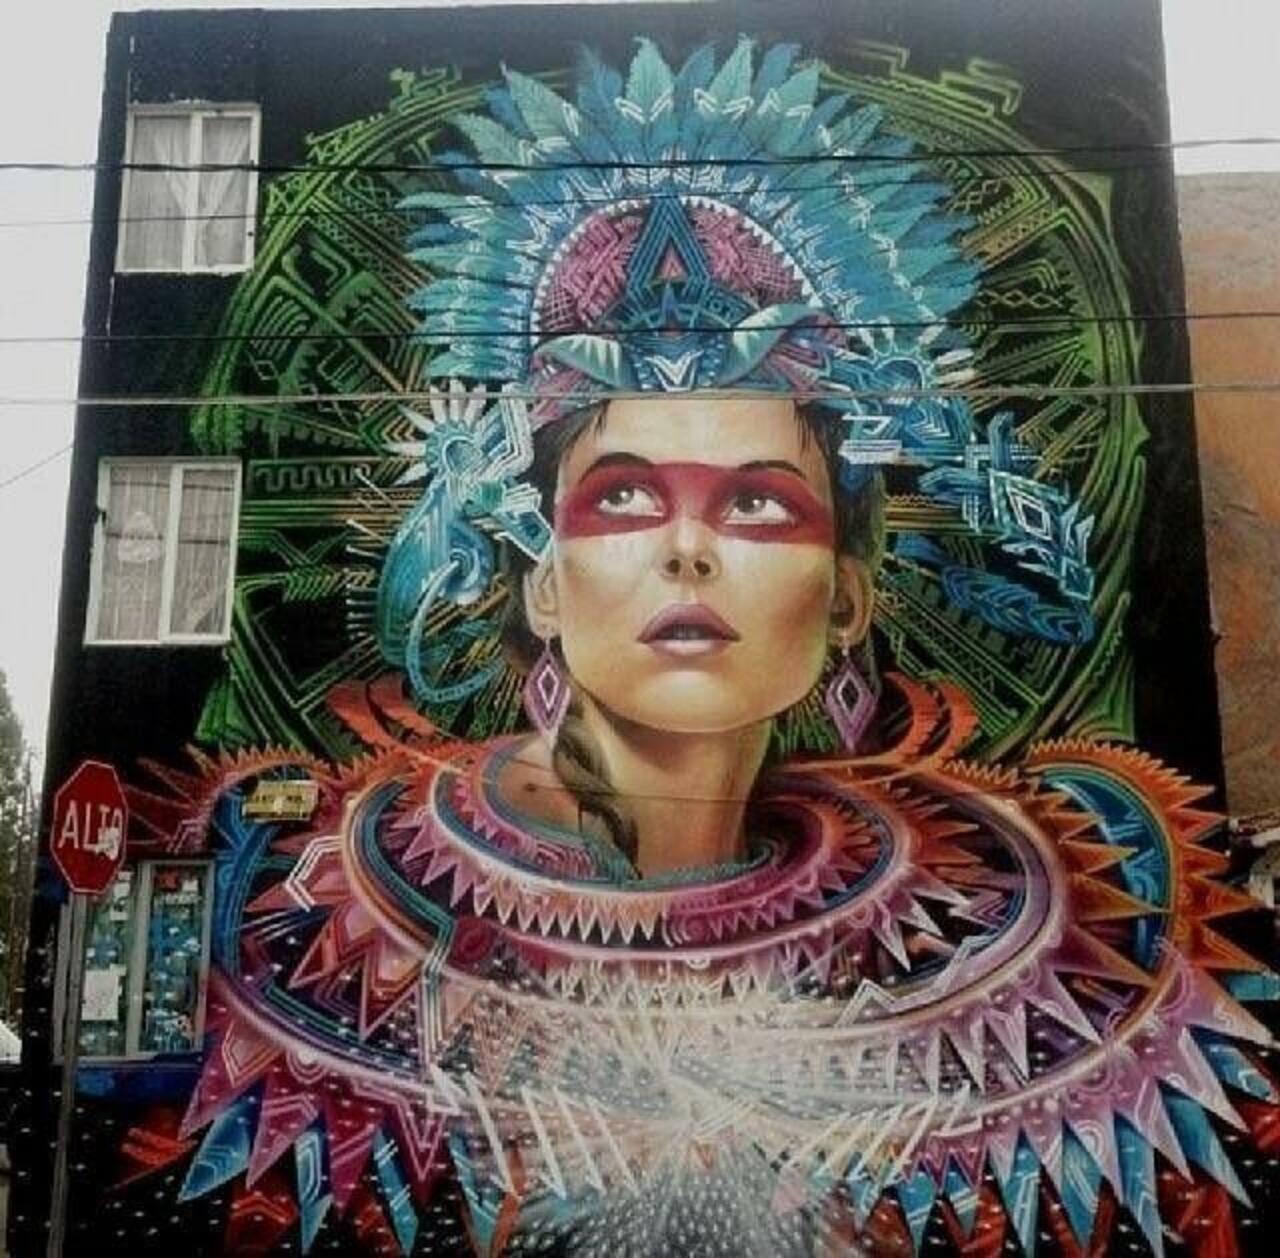 RT @Pitchuskita Street Art in Mexico  #streetart #art #urbanart #graffiti #murals http://t.co/nySra3I2Wq